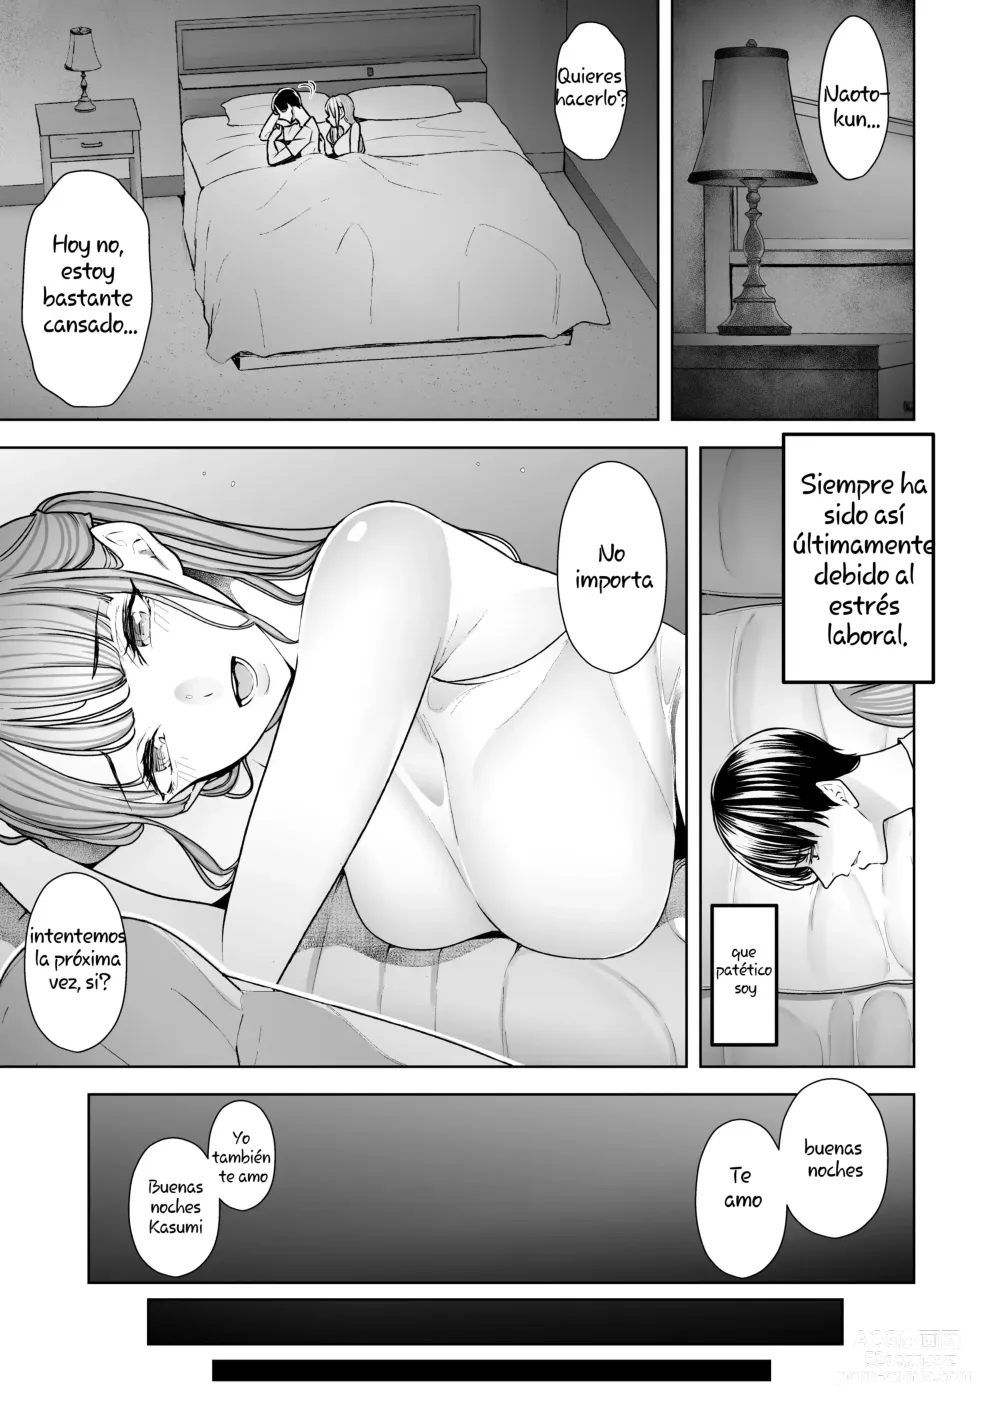 Page 4 of doujinshi Seguí viendo cómo me ponían los cuernos mi esposa y la hacían correrse una y otra vez. completa